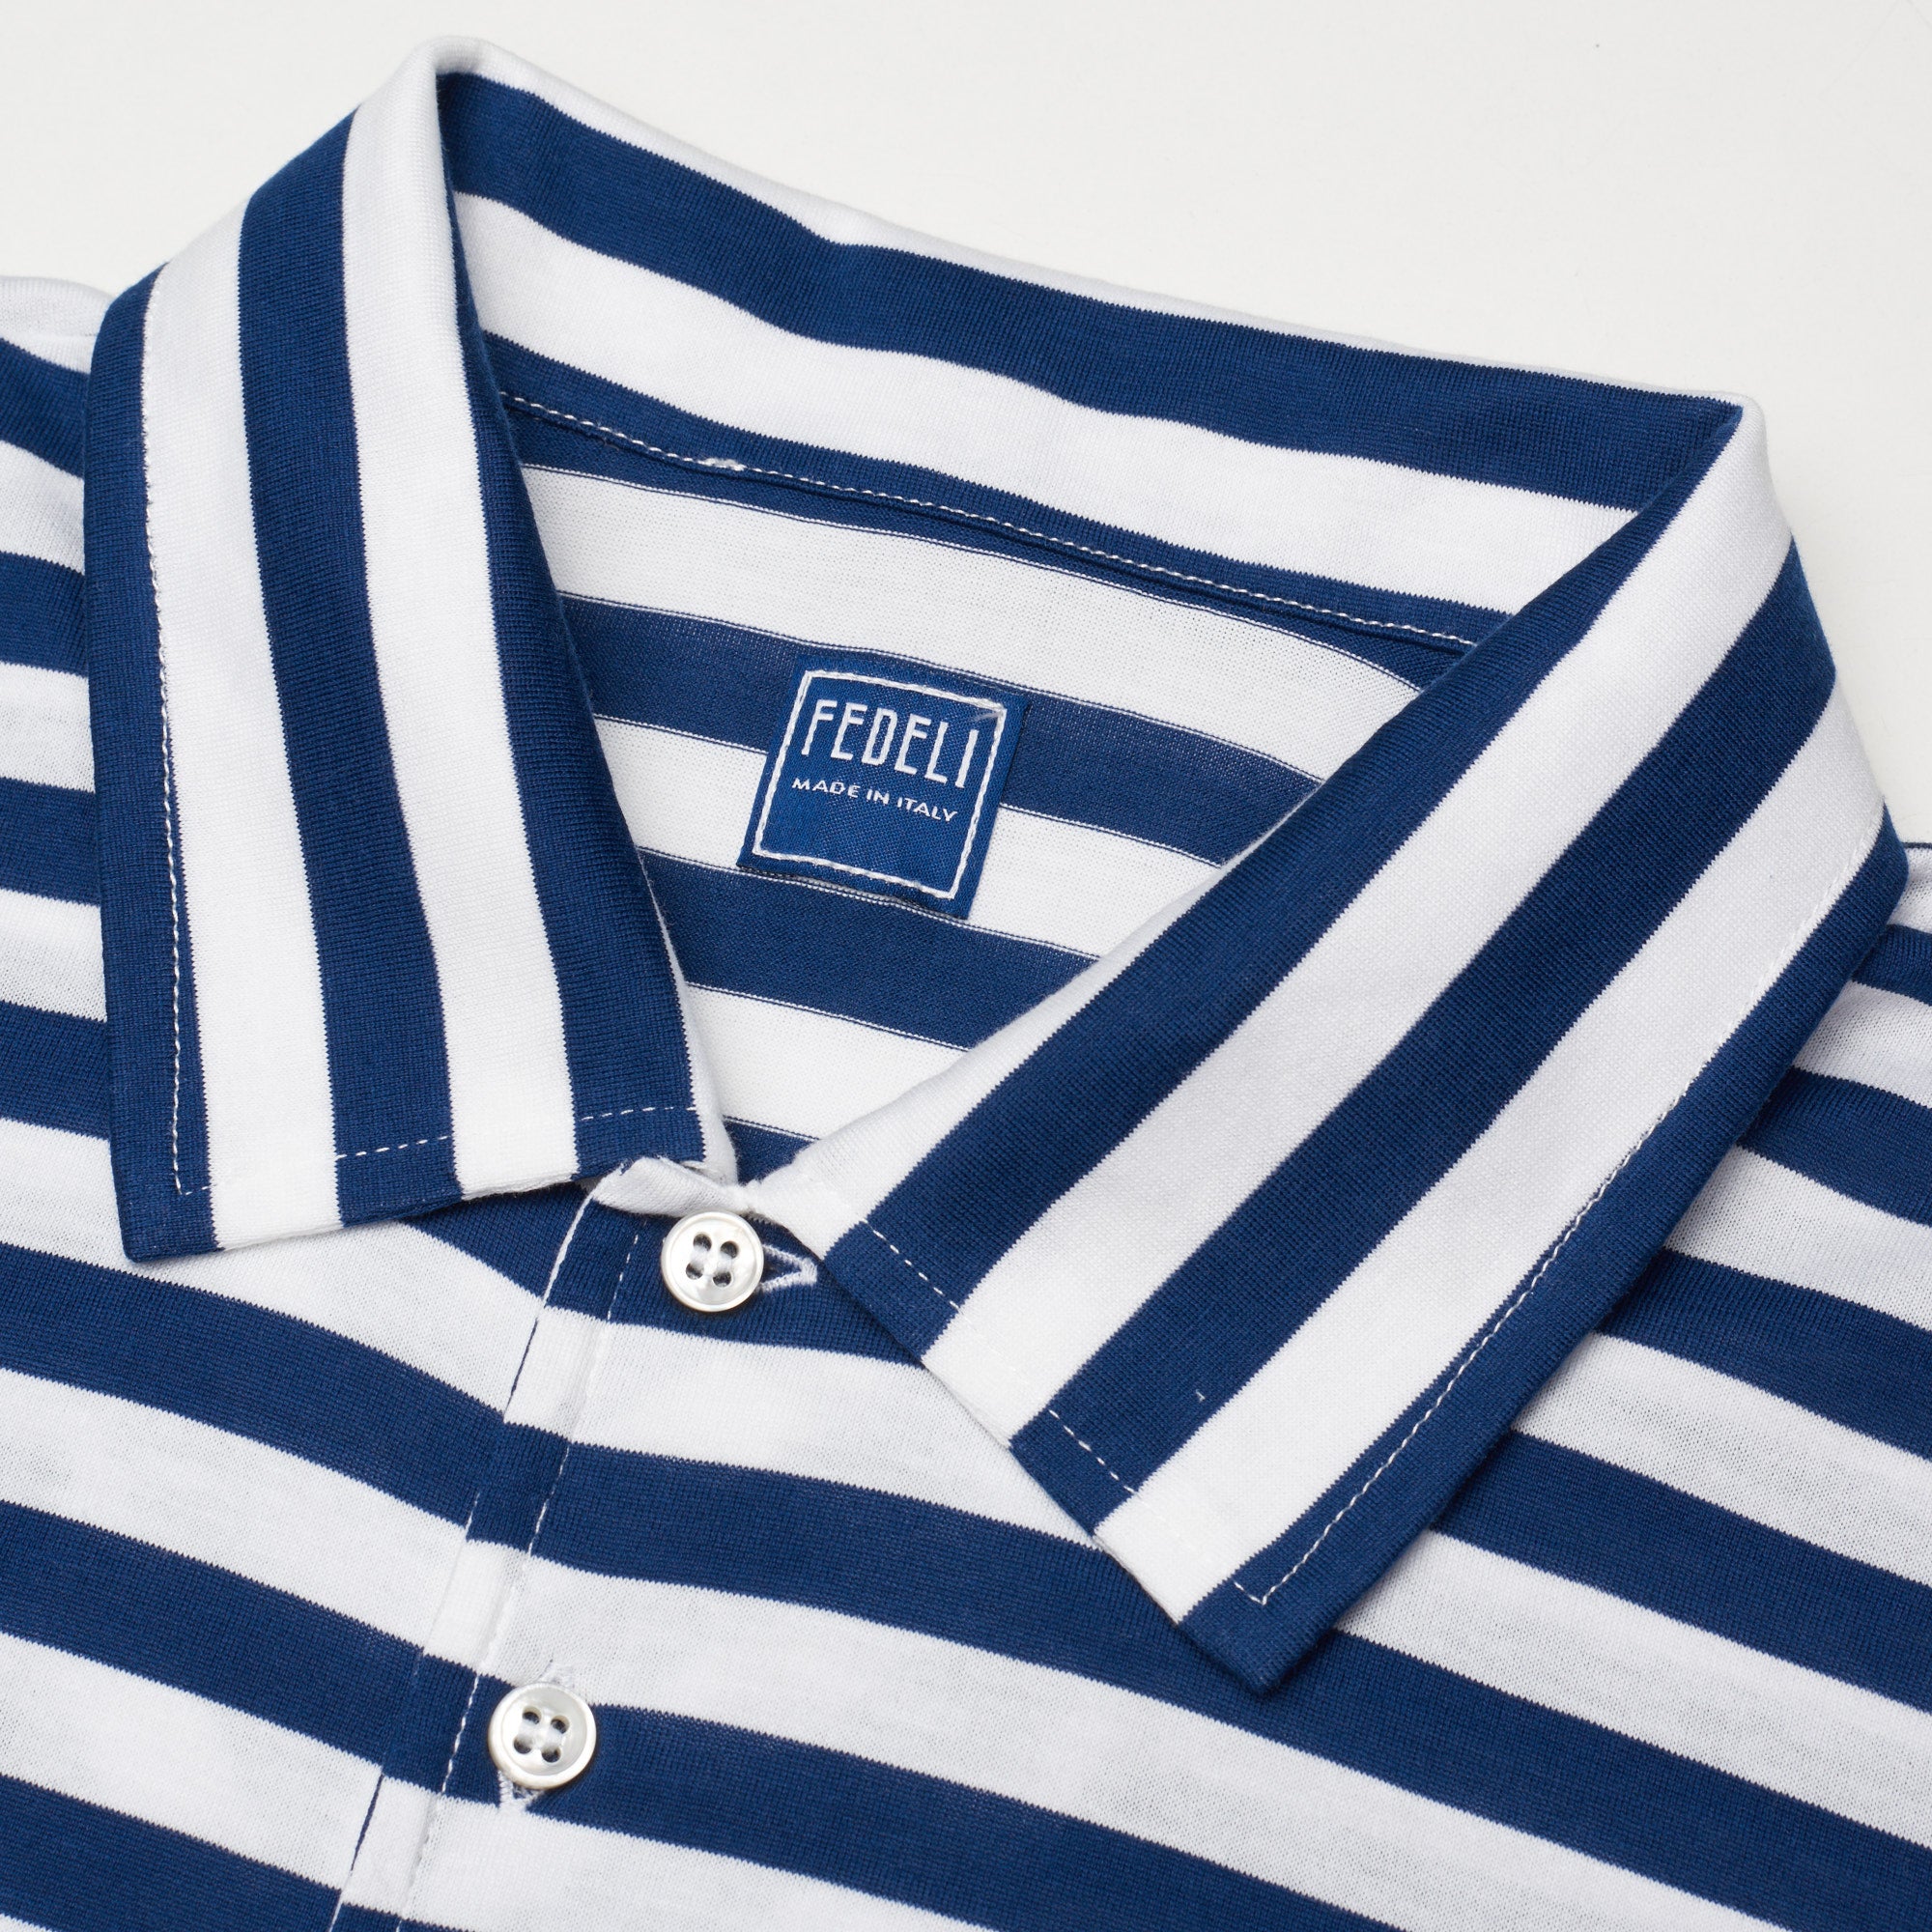 FEDELI "Libeccio" Navy Blue Striped Cotton Jersey Long Sleeve Polo Shirt 56 NEW 2XL